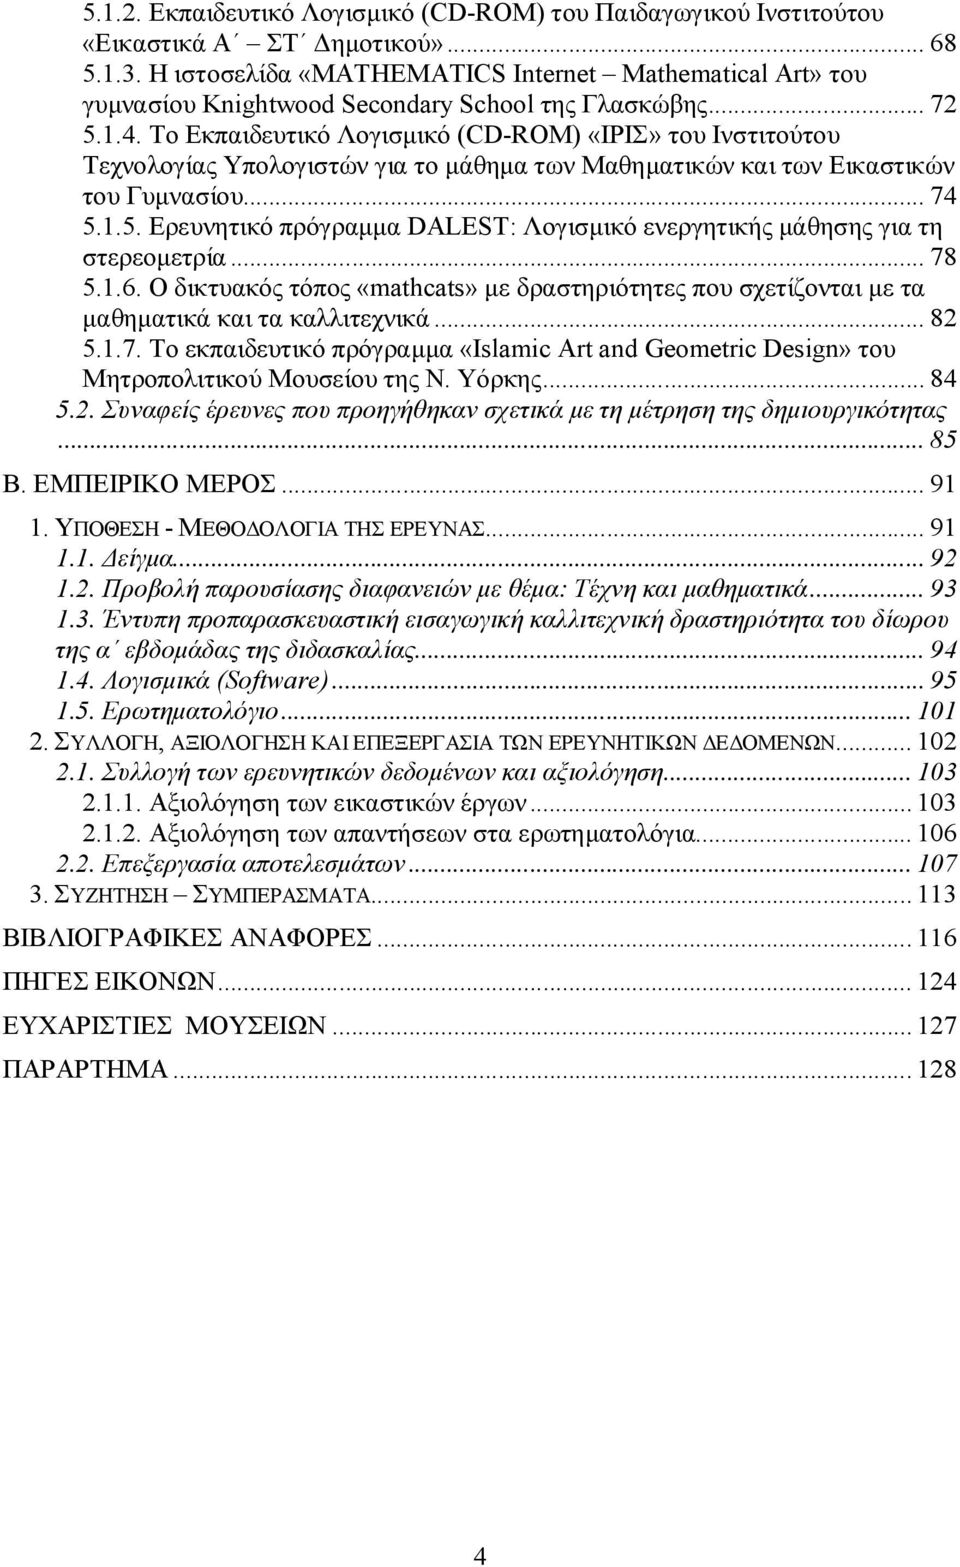 Το Εκπαιδευτικό Λογισμικό (CD-ROM) «ΙΡΙΣ» του Ινστιτούτου Τεχνολογίας Υπολογιστών για το μάθημα των Μαθηματικών και των Εικαστικών του Γυμνασίου... 74 5.